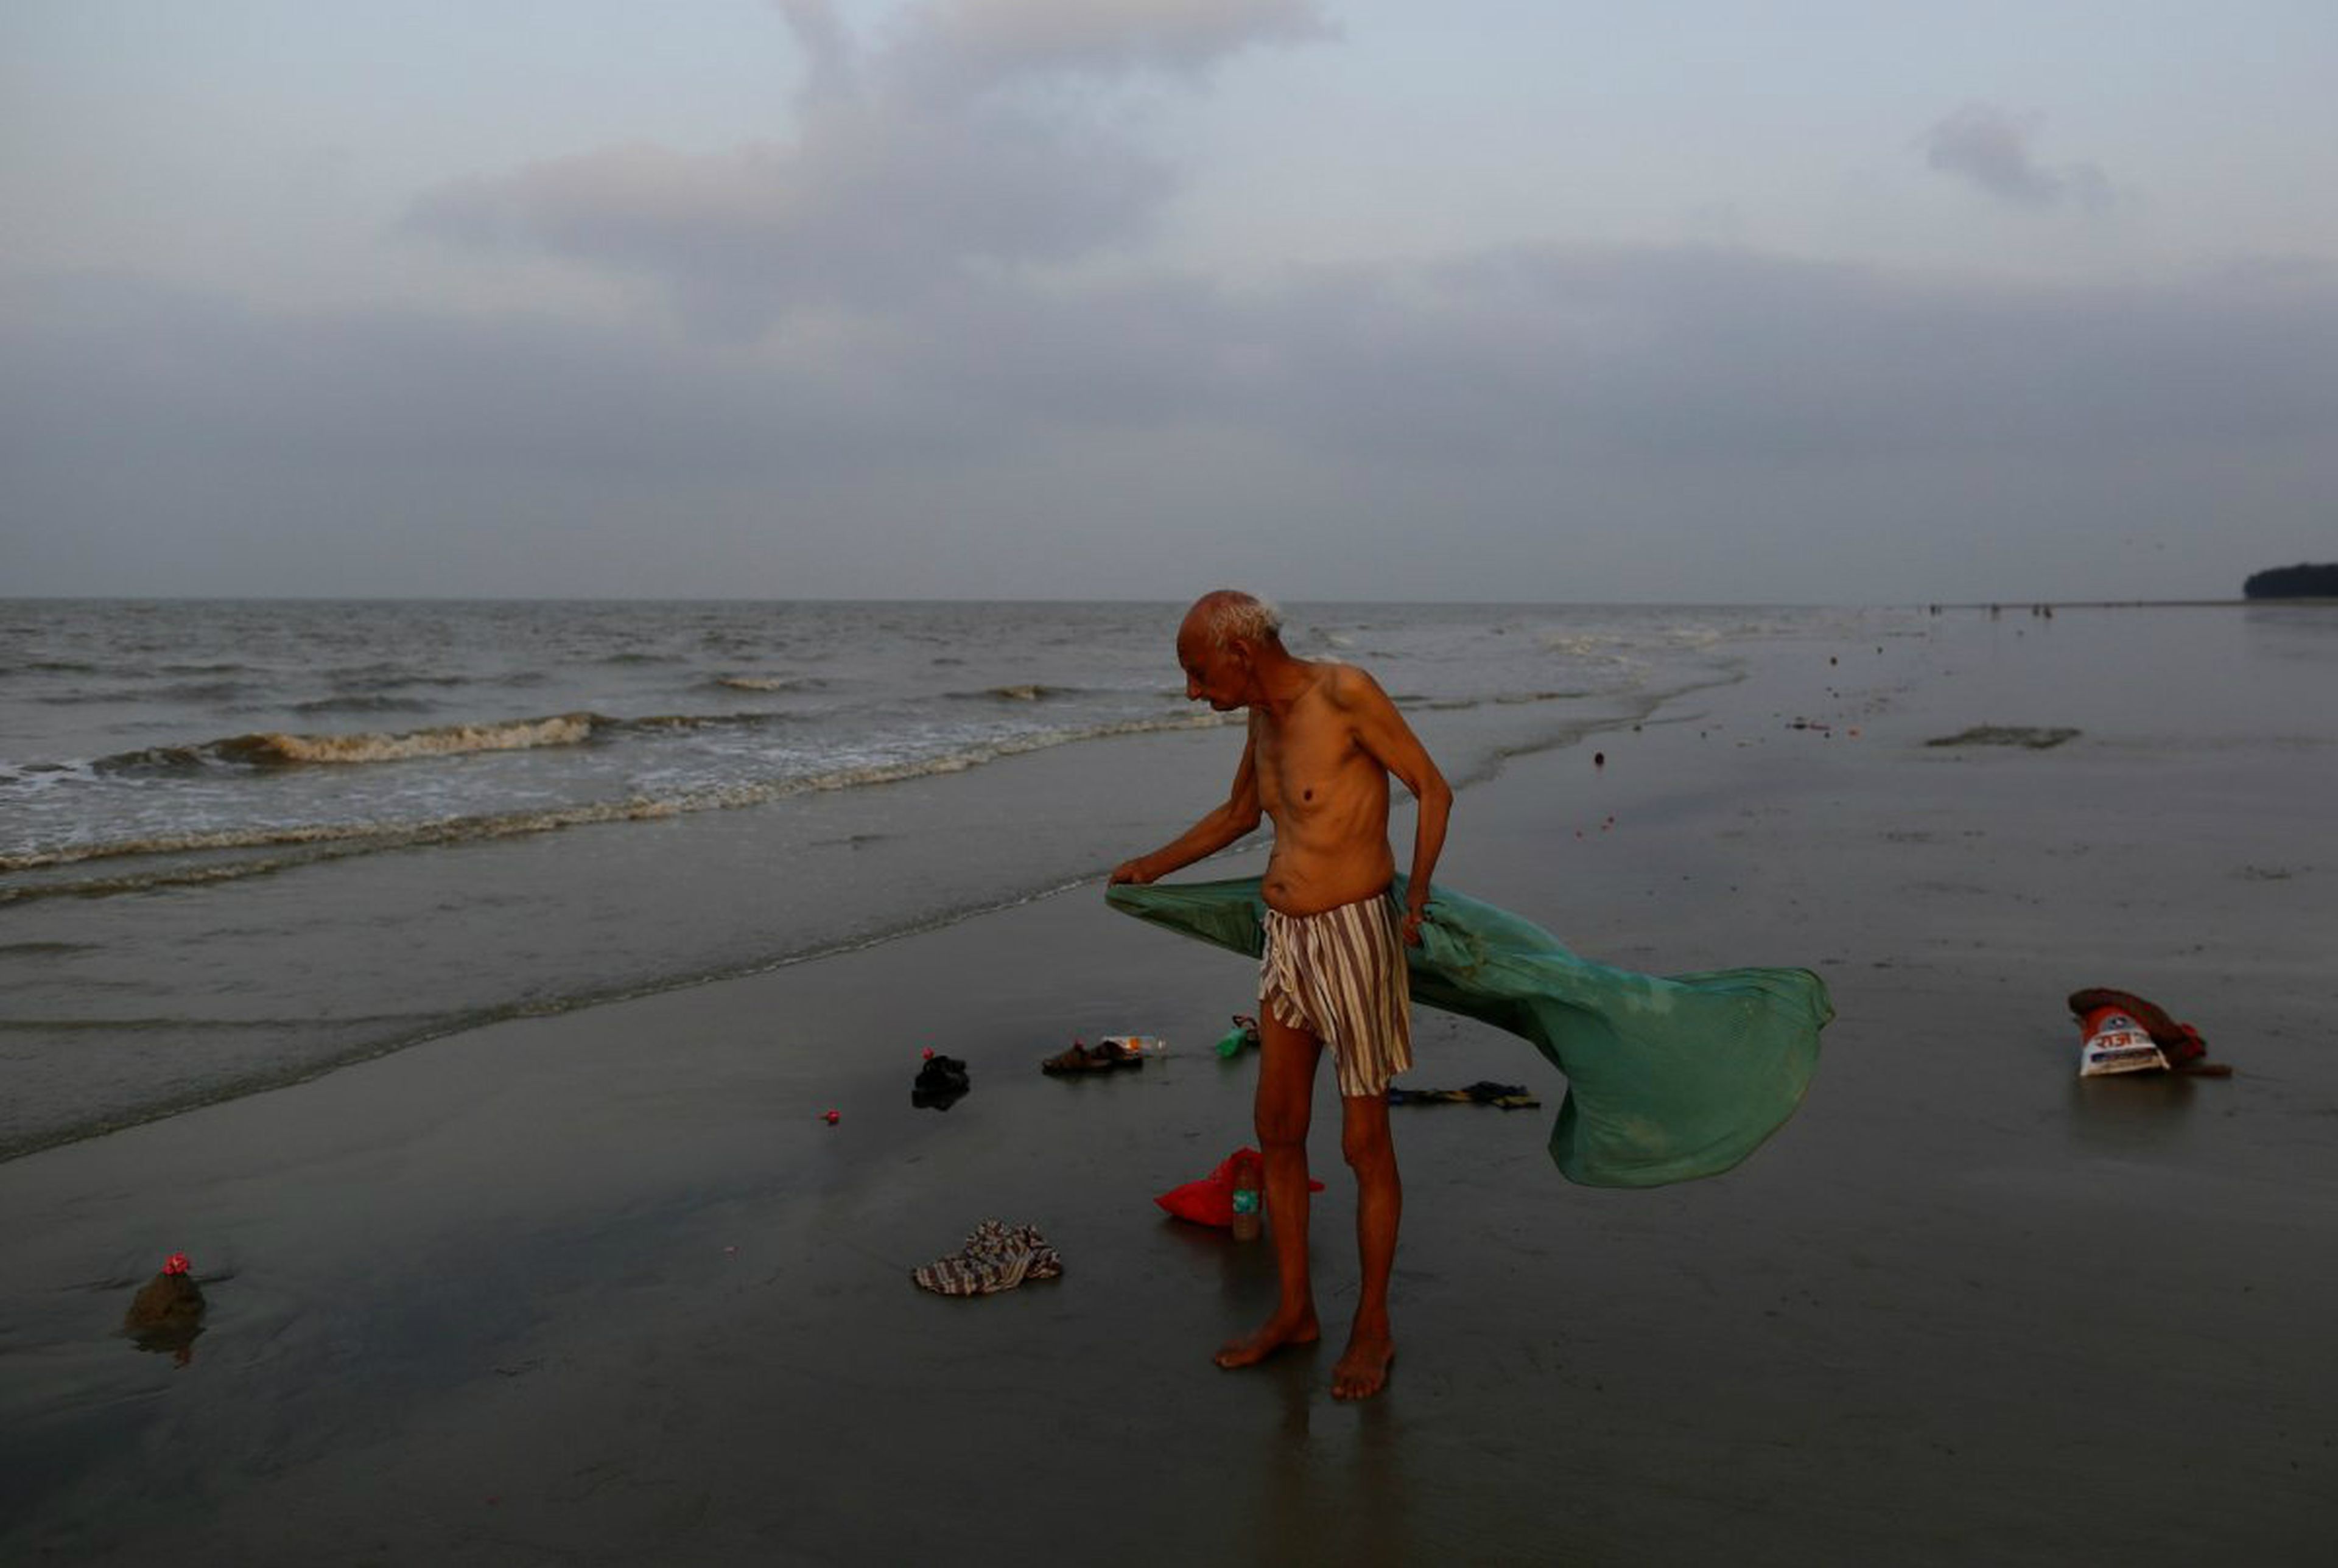 Contaminación en el Ganges, el río sagrado de India